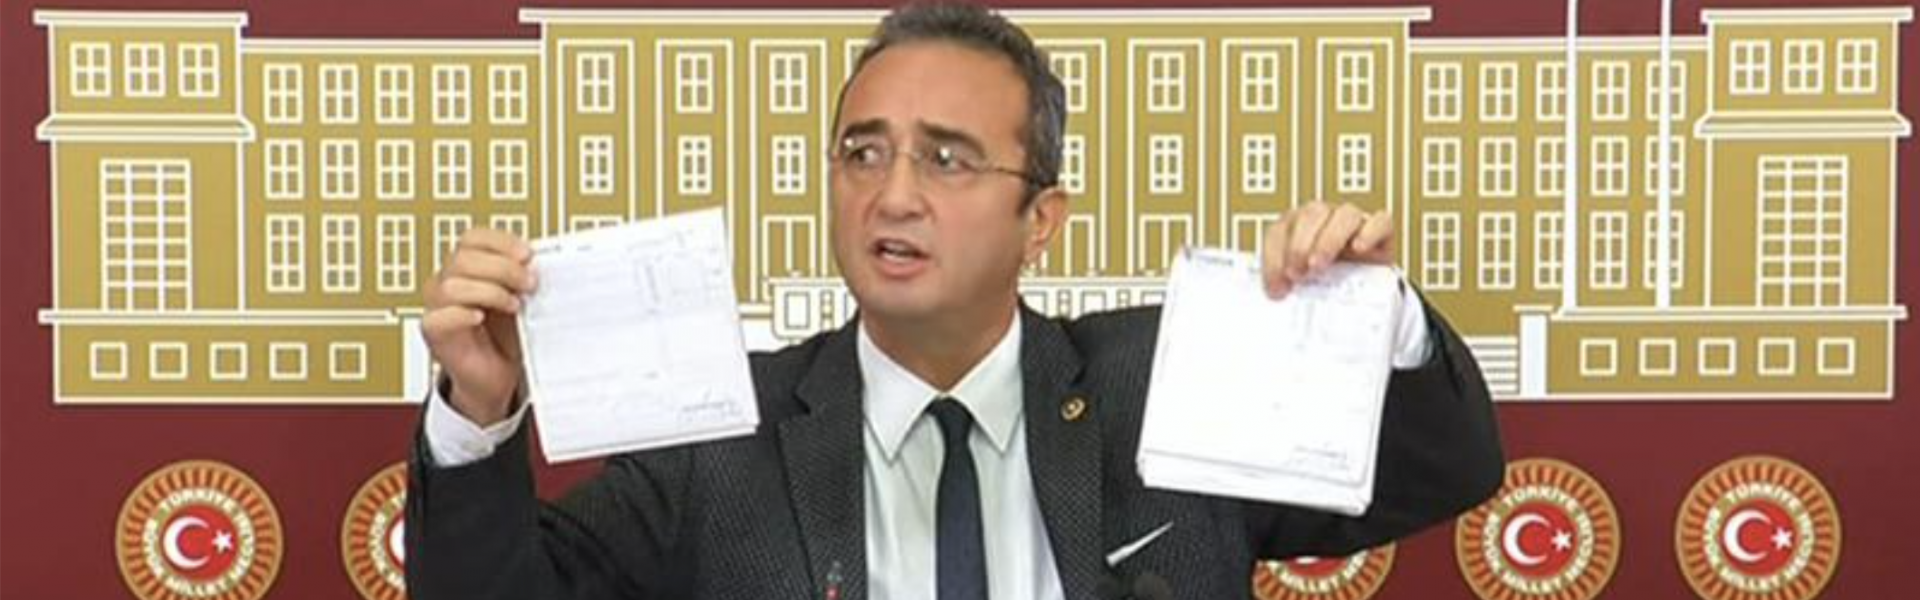 AKP'nin 'sahte' dediği belgeler basına dağıtıldı!